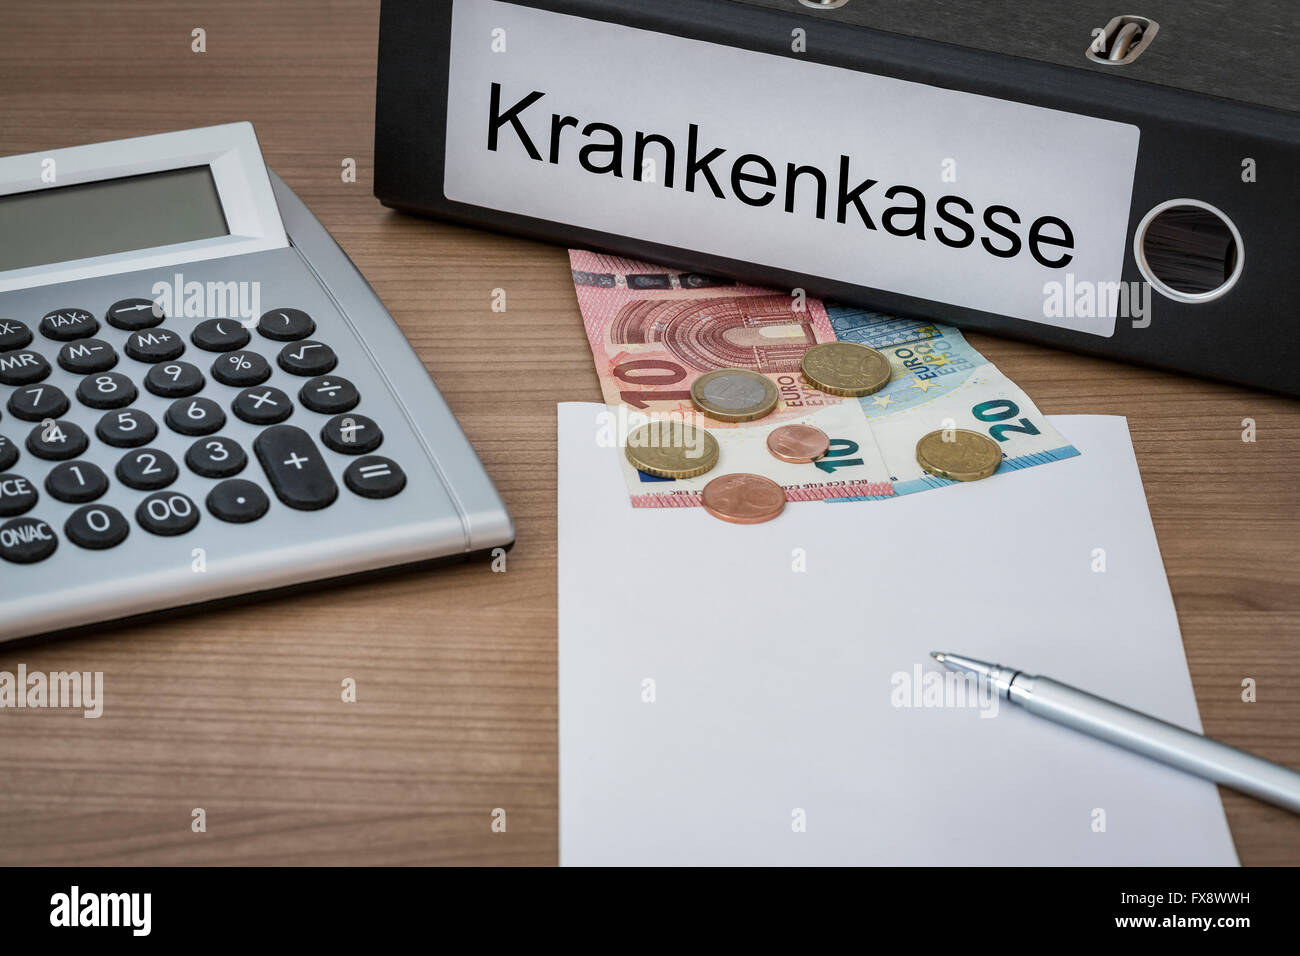 Krankenkasse (allemand de l'assurance-maladie) écrit sur un cahier sur un bureau avec calculatrice euro argent feuille vierge et un stylo Banque D'Images